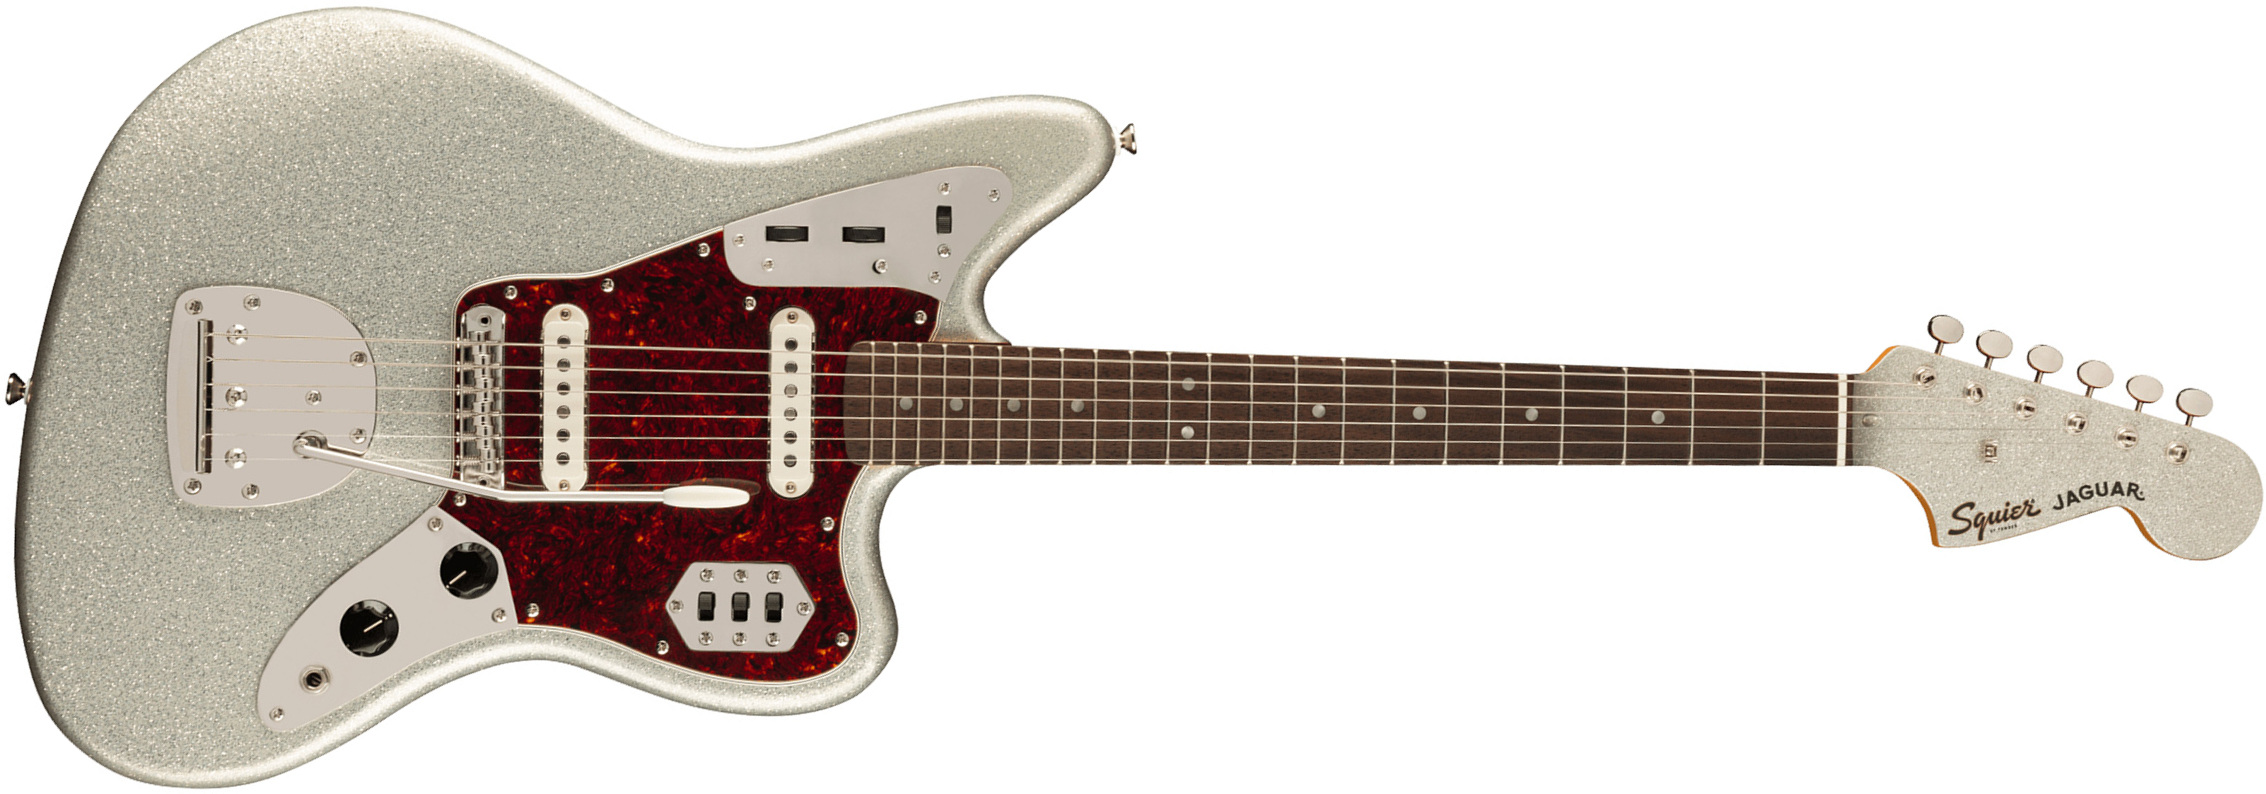 Squier Jaguar 60s Classic Vibe Fsr Ltd 2s Trem Lau - Silver Sparkle Matching Headstock - Retro-Rock-E-Gitarre - Main picture